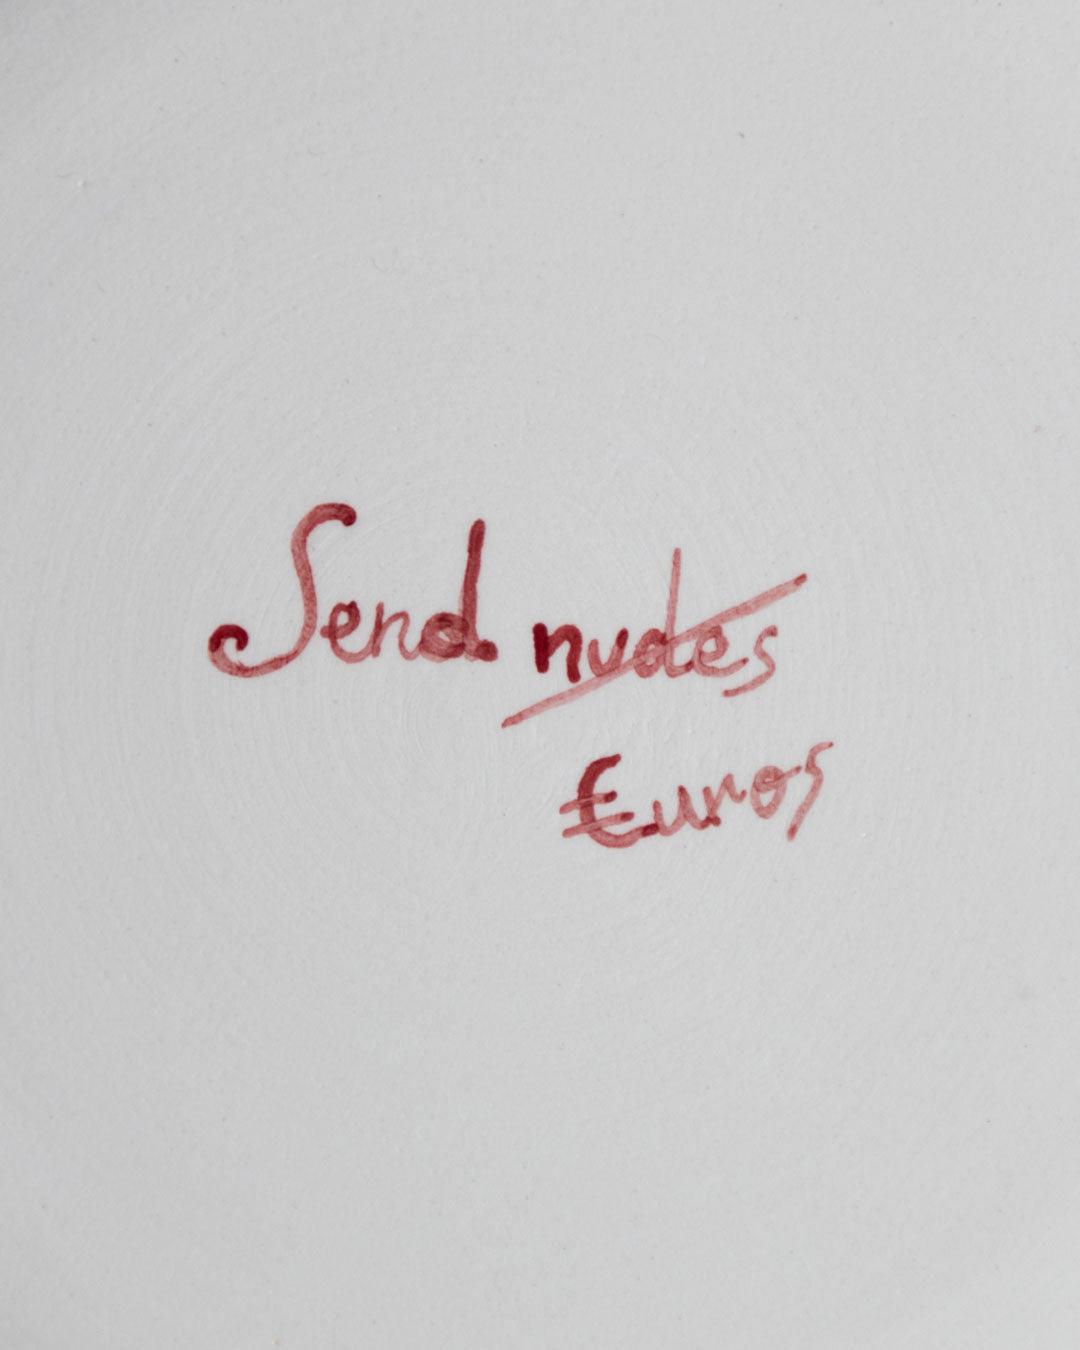 Send nudes plate